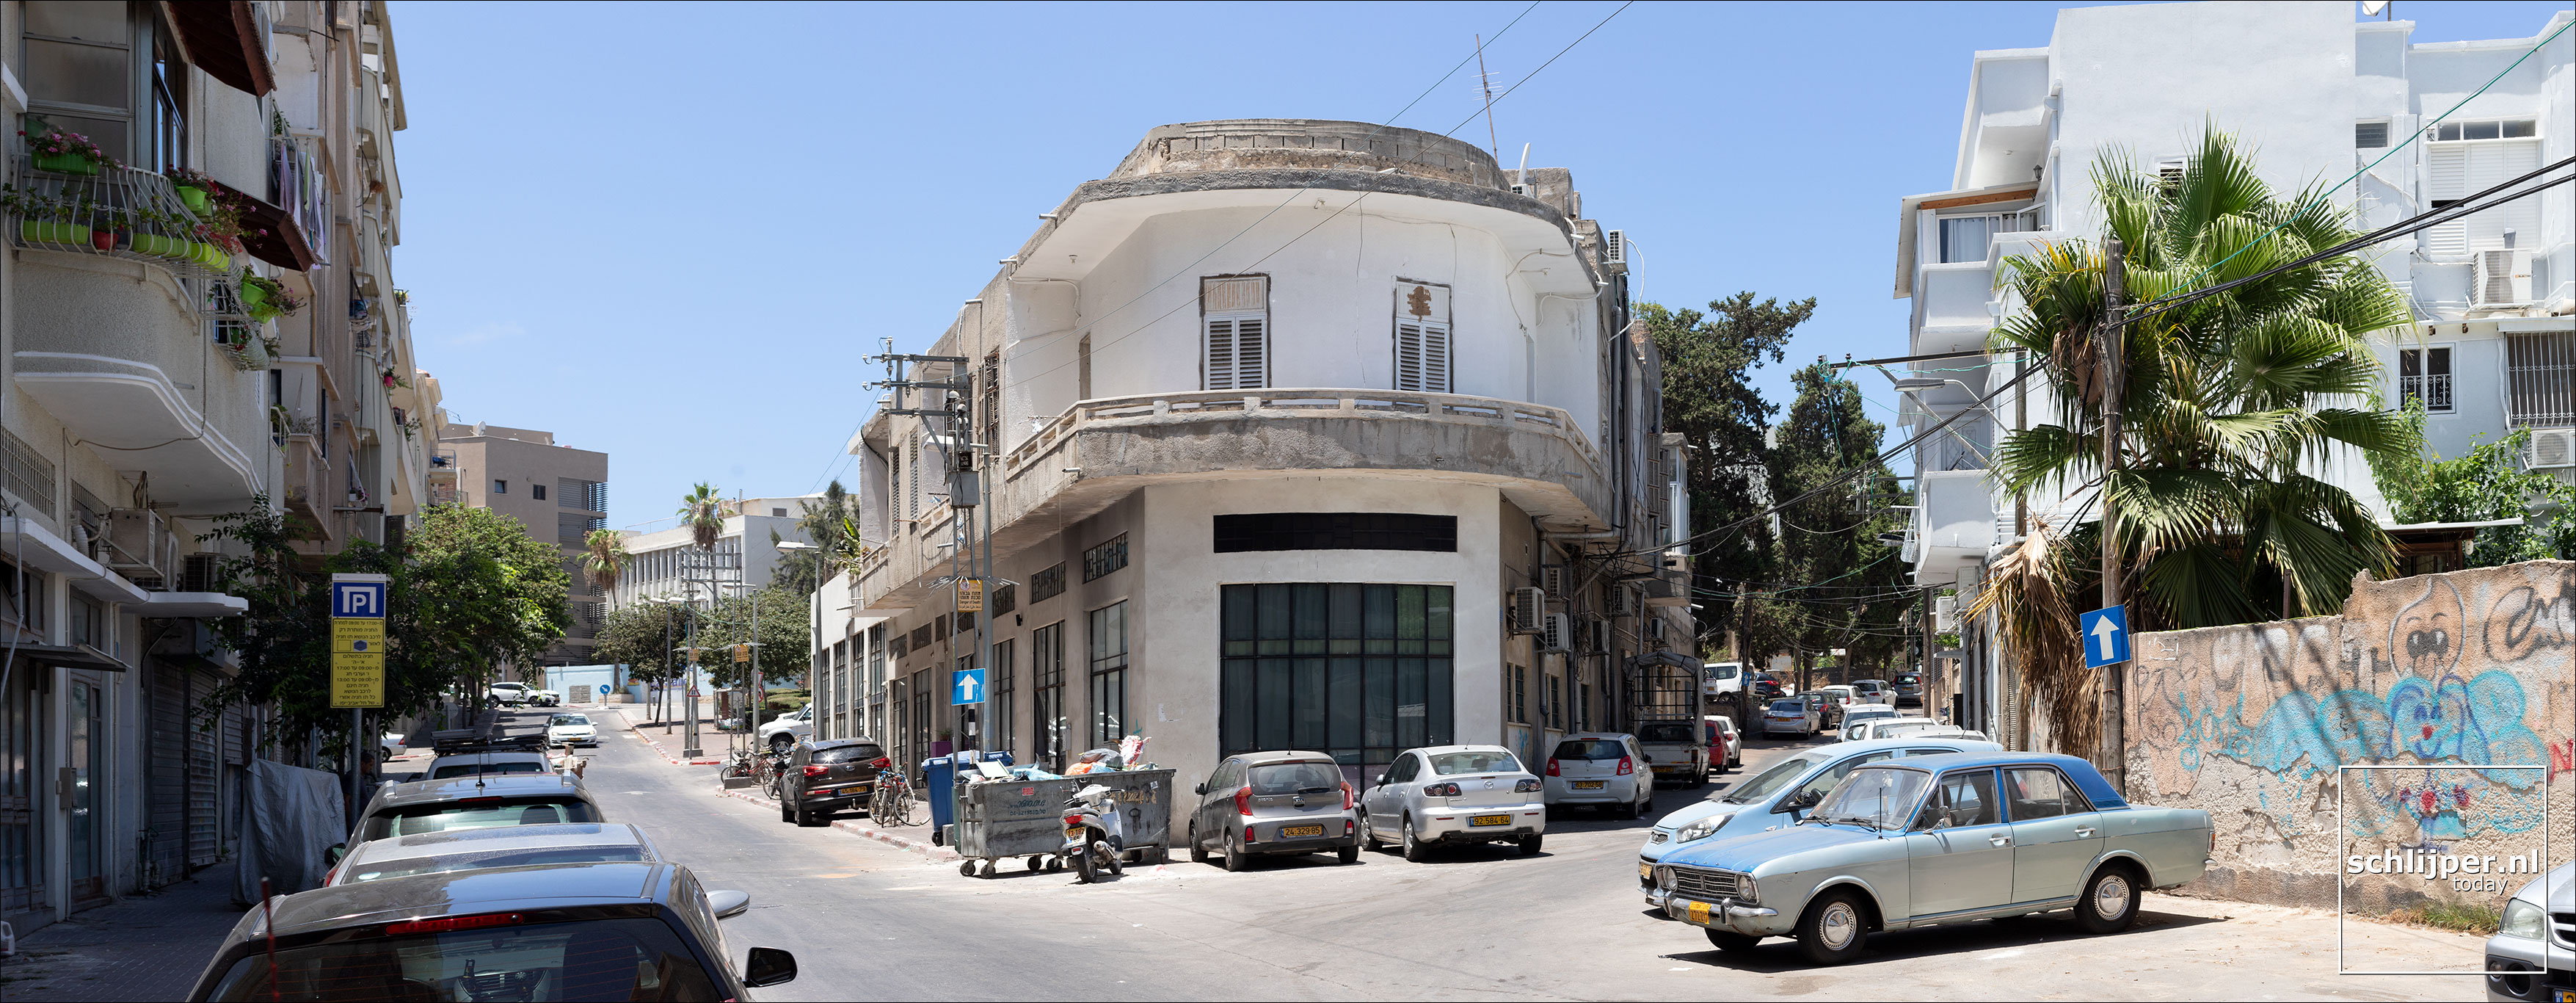 Israel, Jaffa, 13 juli 2019